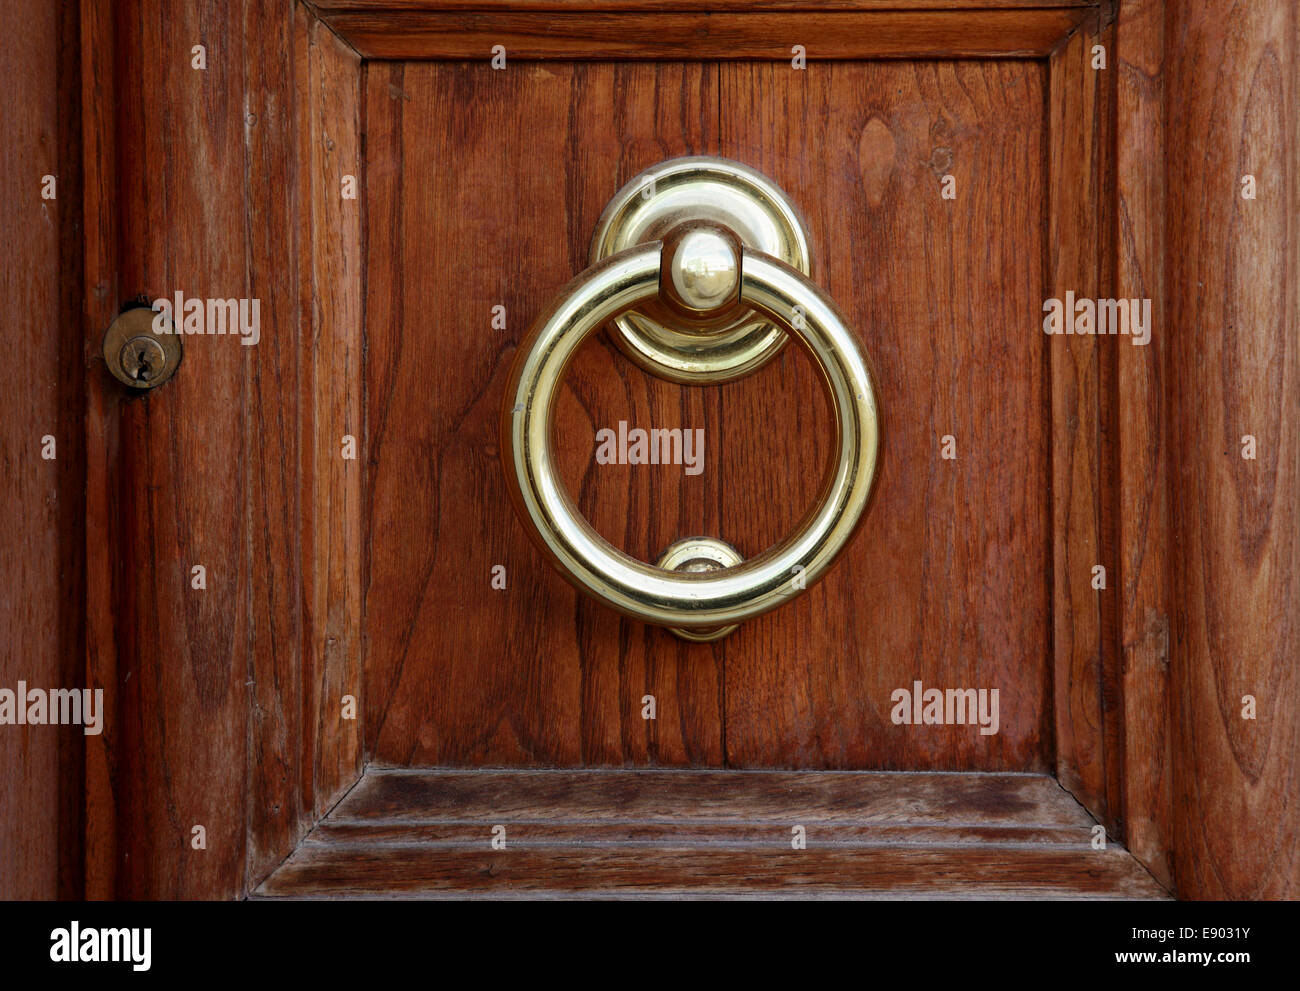 Ancienne poignée ronde en métal sur la porte Photo Stock - Alamy